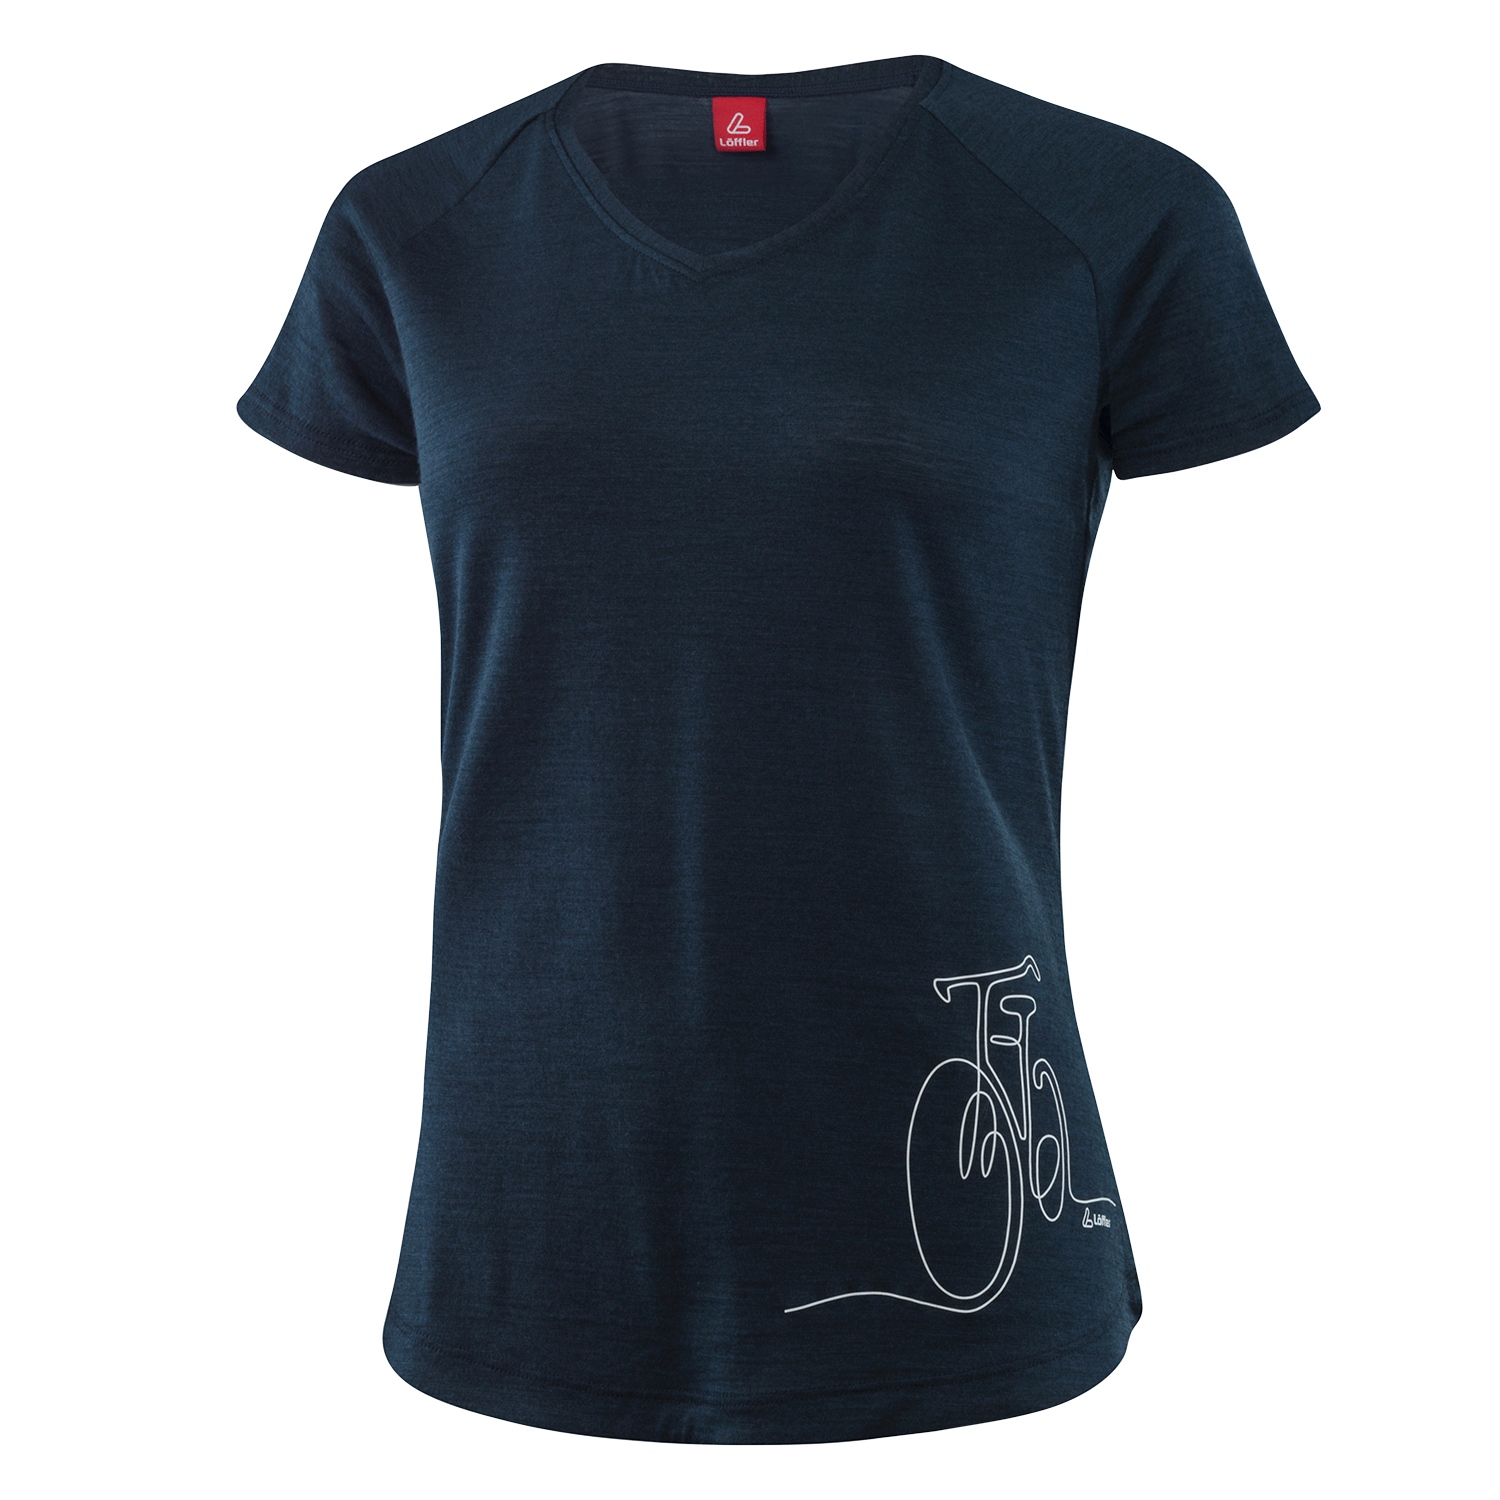 Produktbild von Löffler Bicycle Merino-Tencel Damen Printshirt - dunkelblau 495